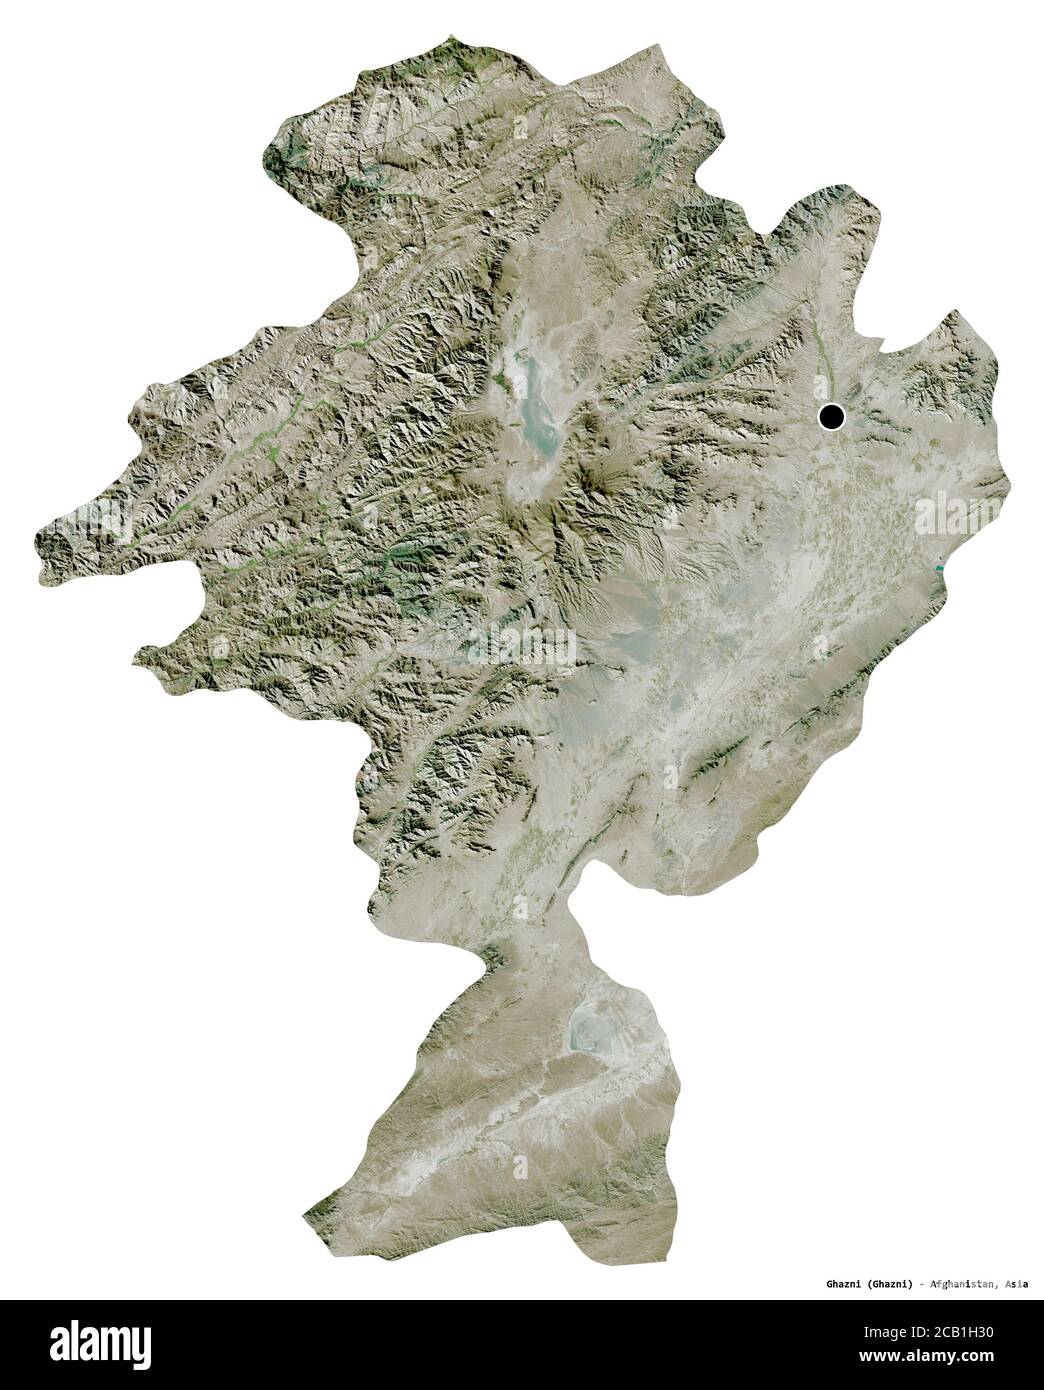 Forma di Ghazni, provincia dell'Afghanistan, con la sua capitale isolata su sfondo bianco. Immagini satellitari. Rendering 3D Foto Stock